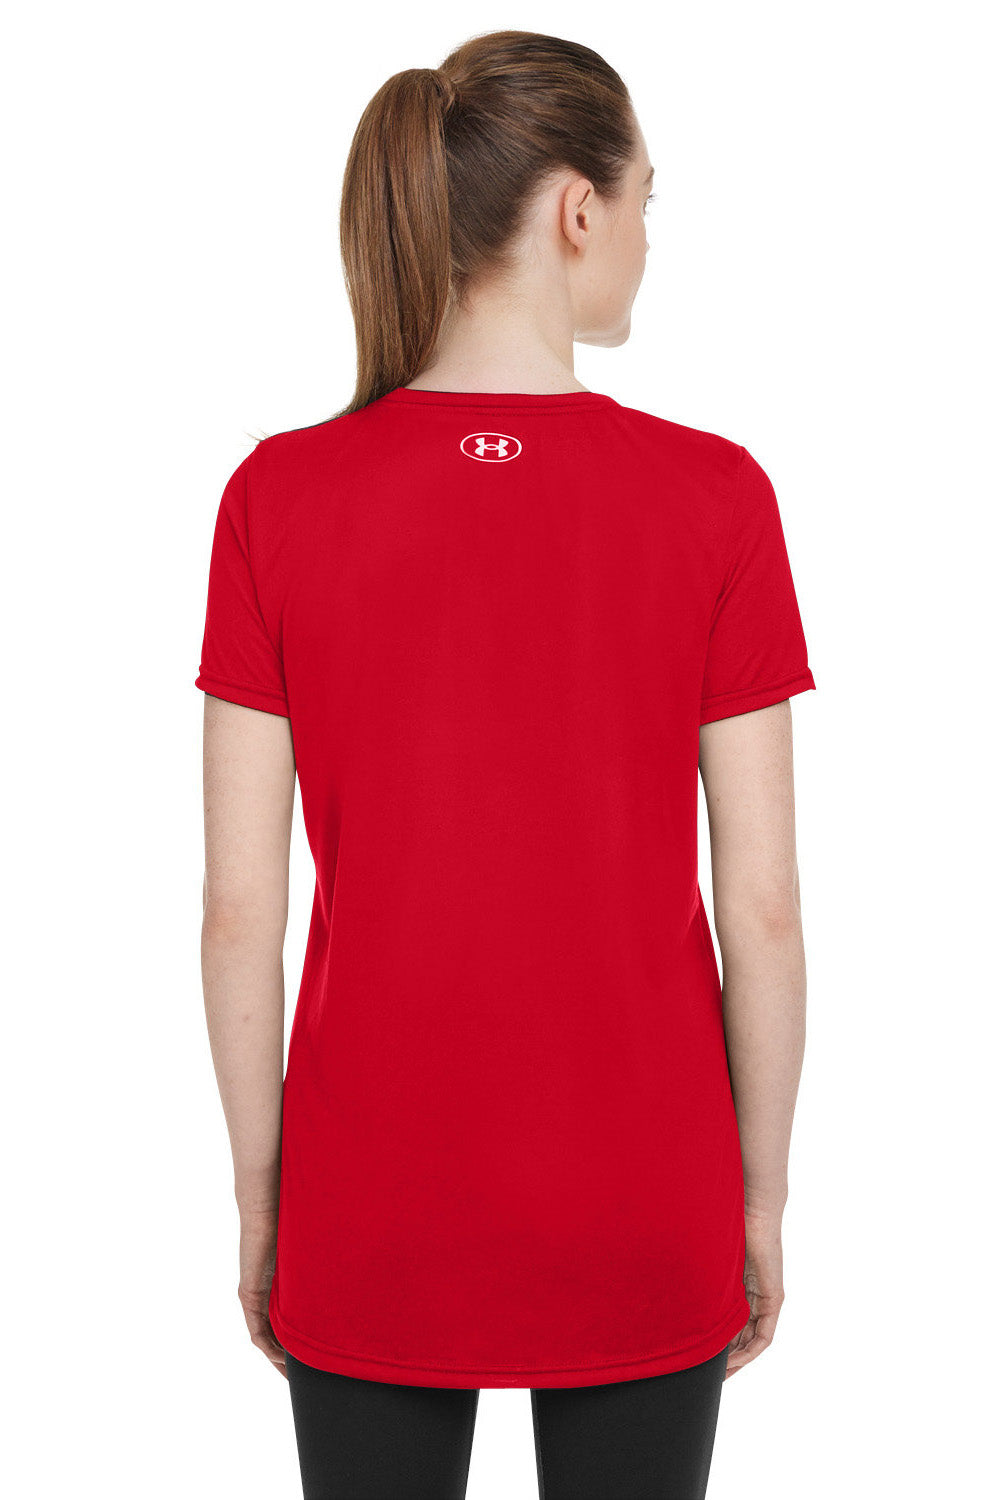 Under Armour 1376847 Womens Team Tech Moisture Wicking Short Sleeve Crewneck T-Shirt Red Model Back